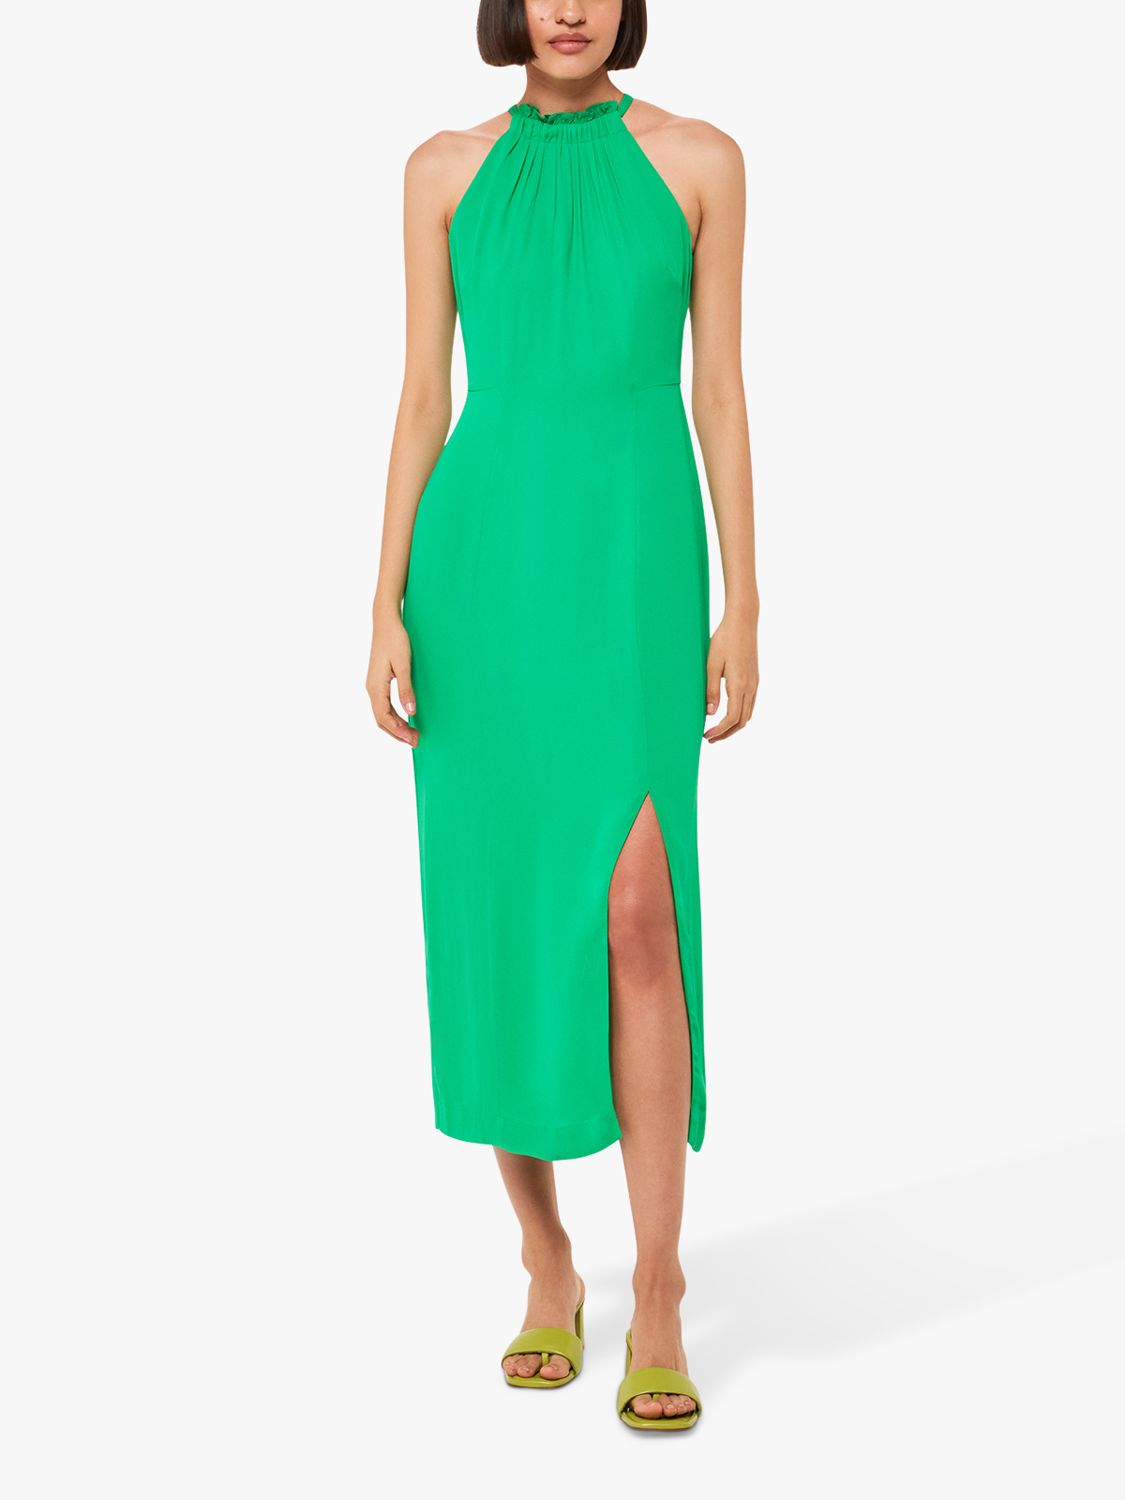 Однотонное платье миди с воротником-халтером Whistles Eliza, зеленое